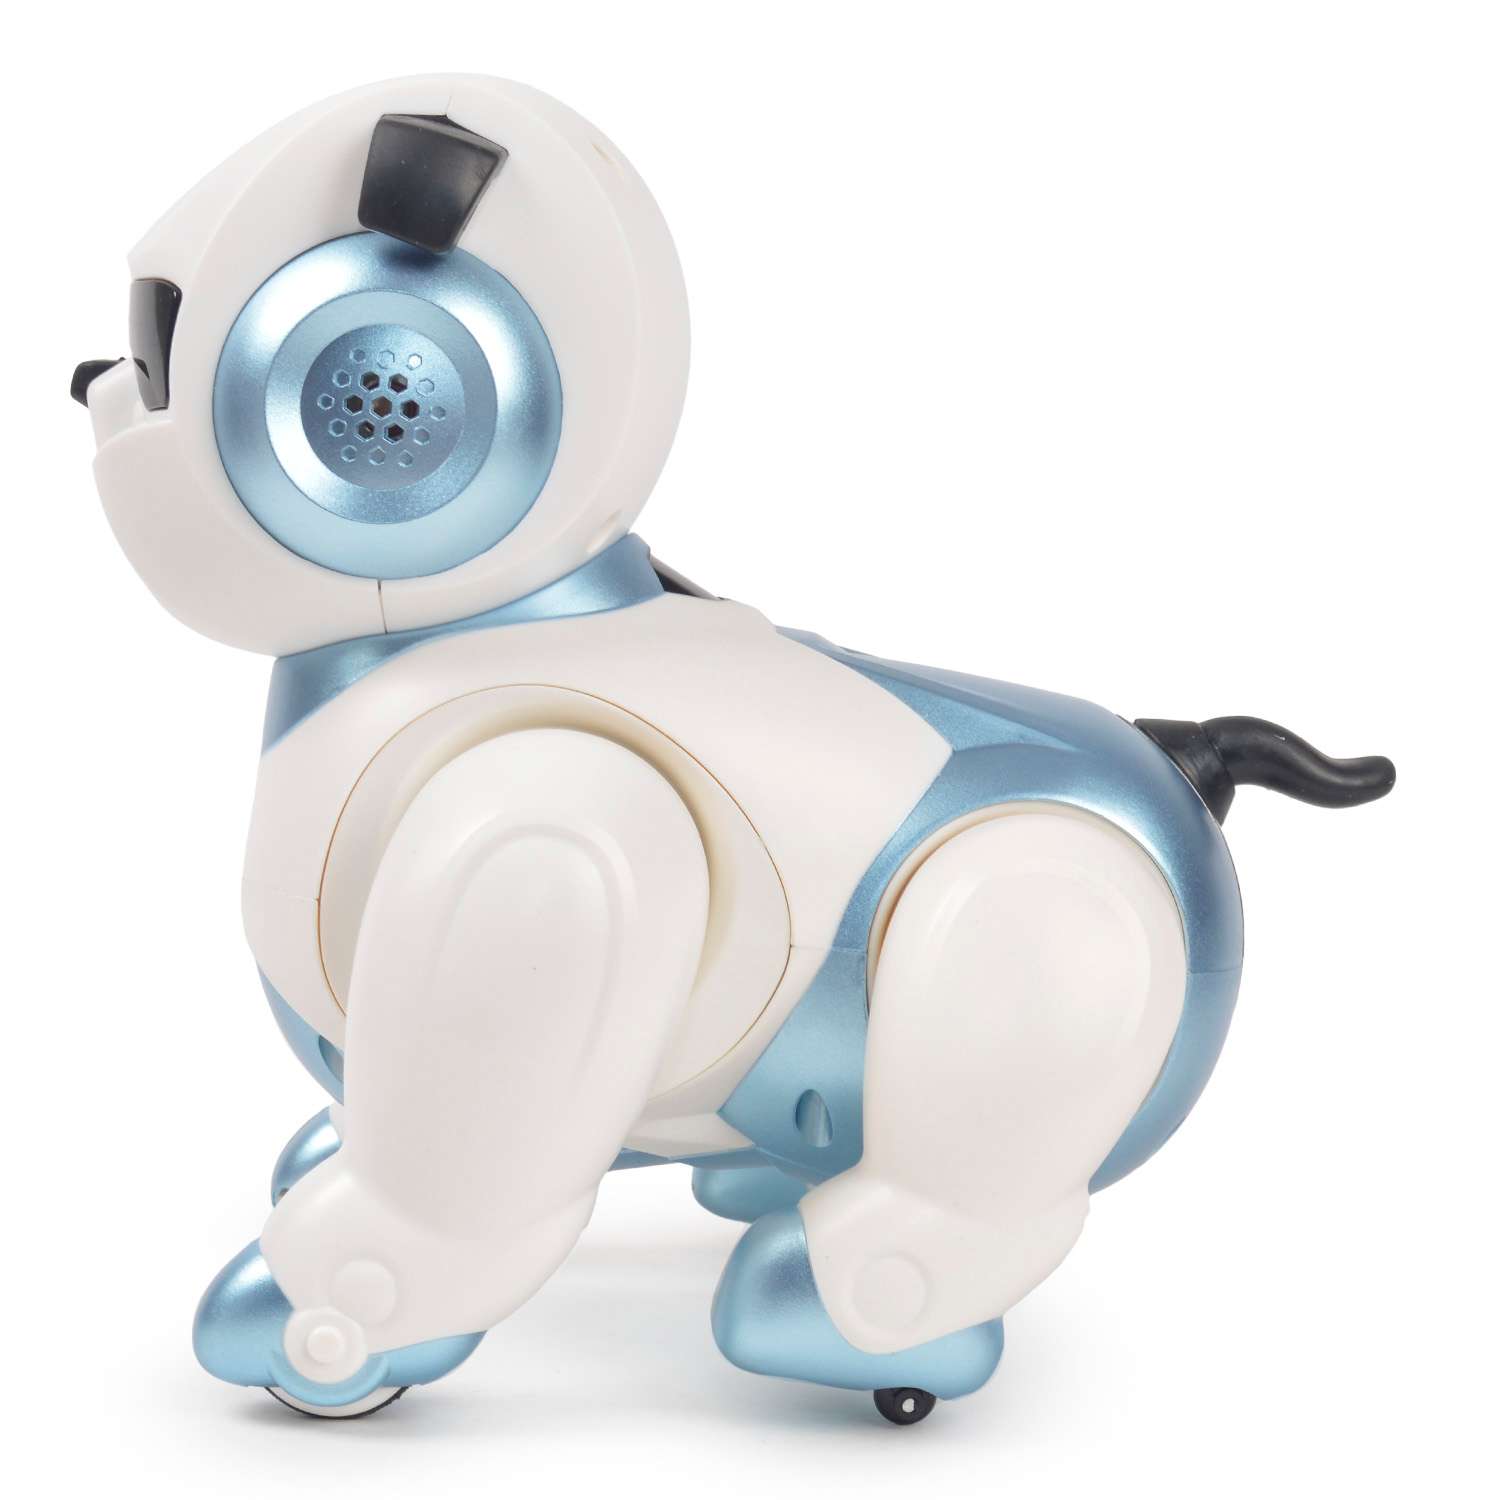  Собака-робот Mobicaro голосовое и сенсорное управление  ZY1416256 - фото 3